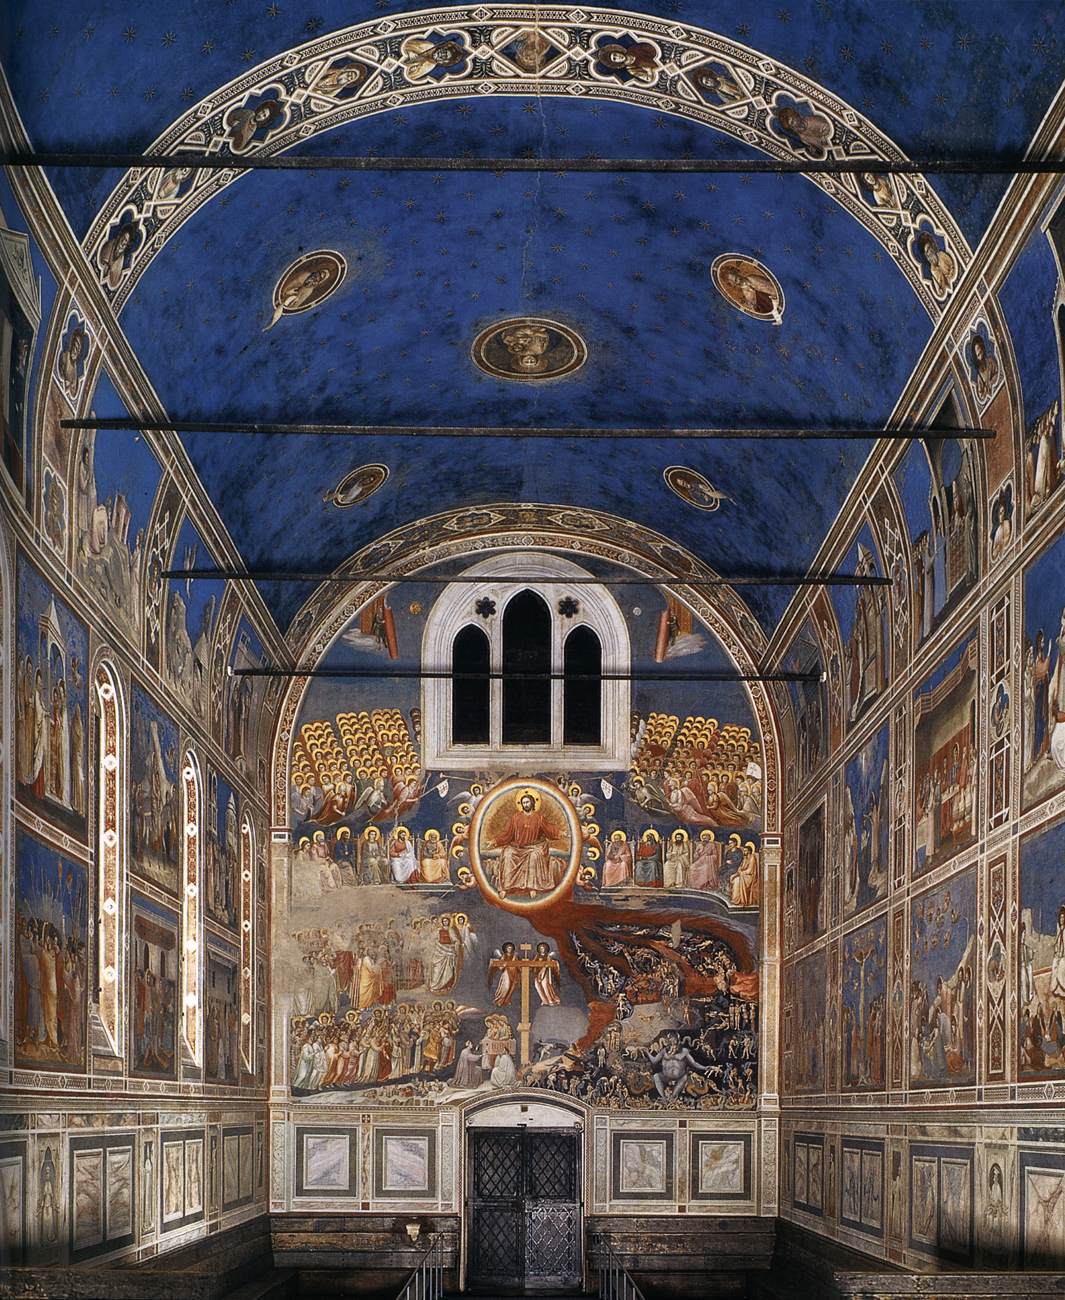 阿雷纳礼拜堂壁画:仰望神圣美丽的天国